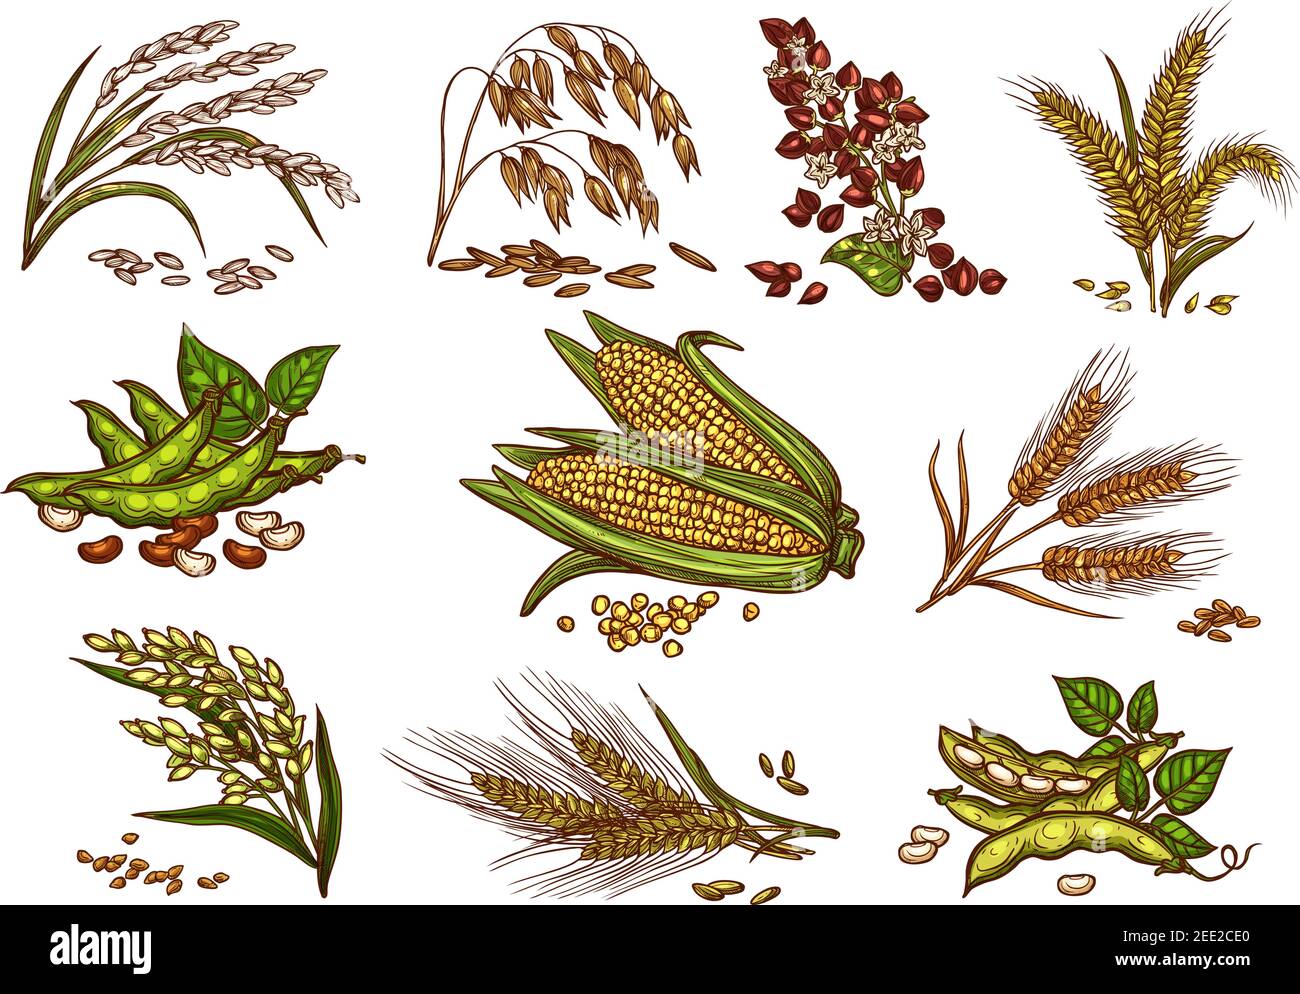 Getreide und Getreidepflanzen Vektor-Set. Isolierte Symbole für Weizen- und Roggenohren, Buchweizenkerne und Hafer- oder Gerstenhirse mit Reiskeibe. Landwirtschaft har Stock Vektor